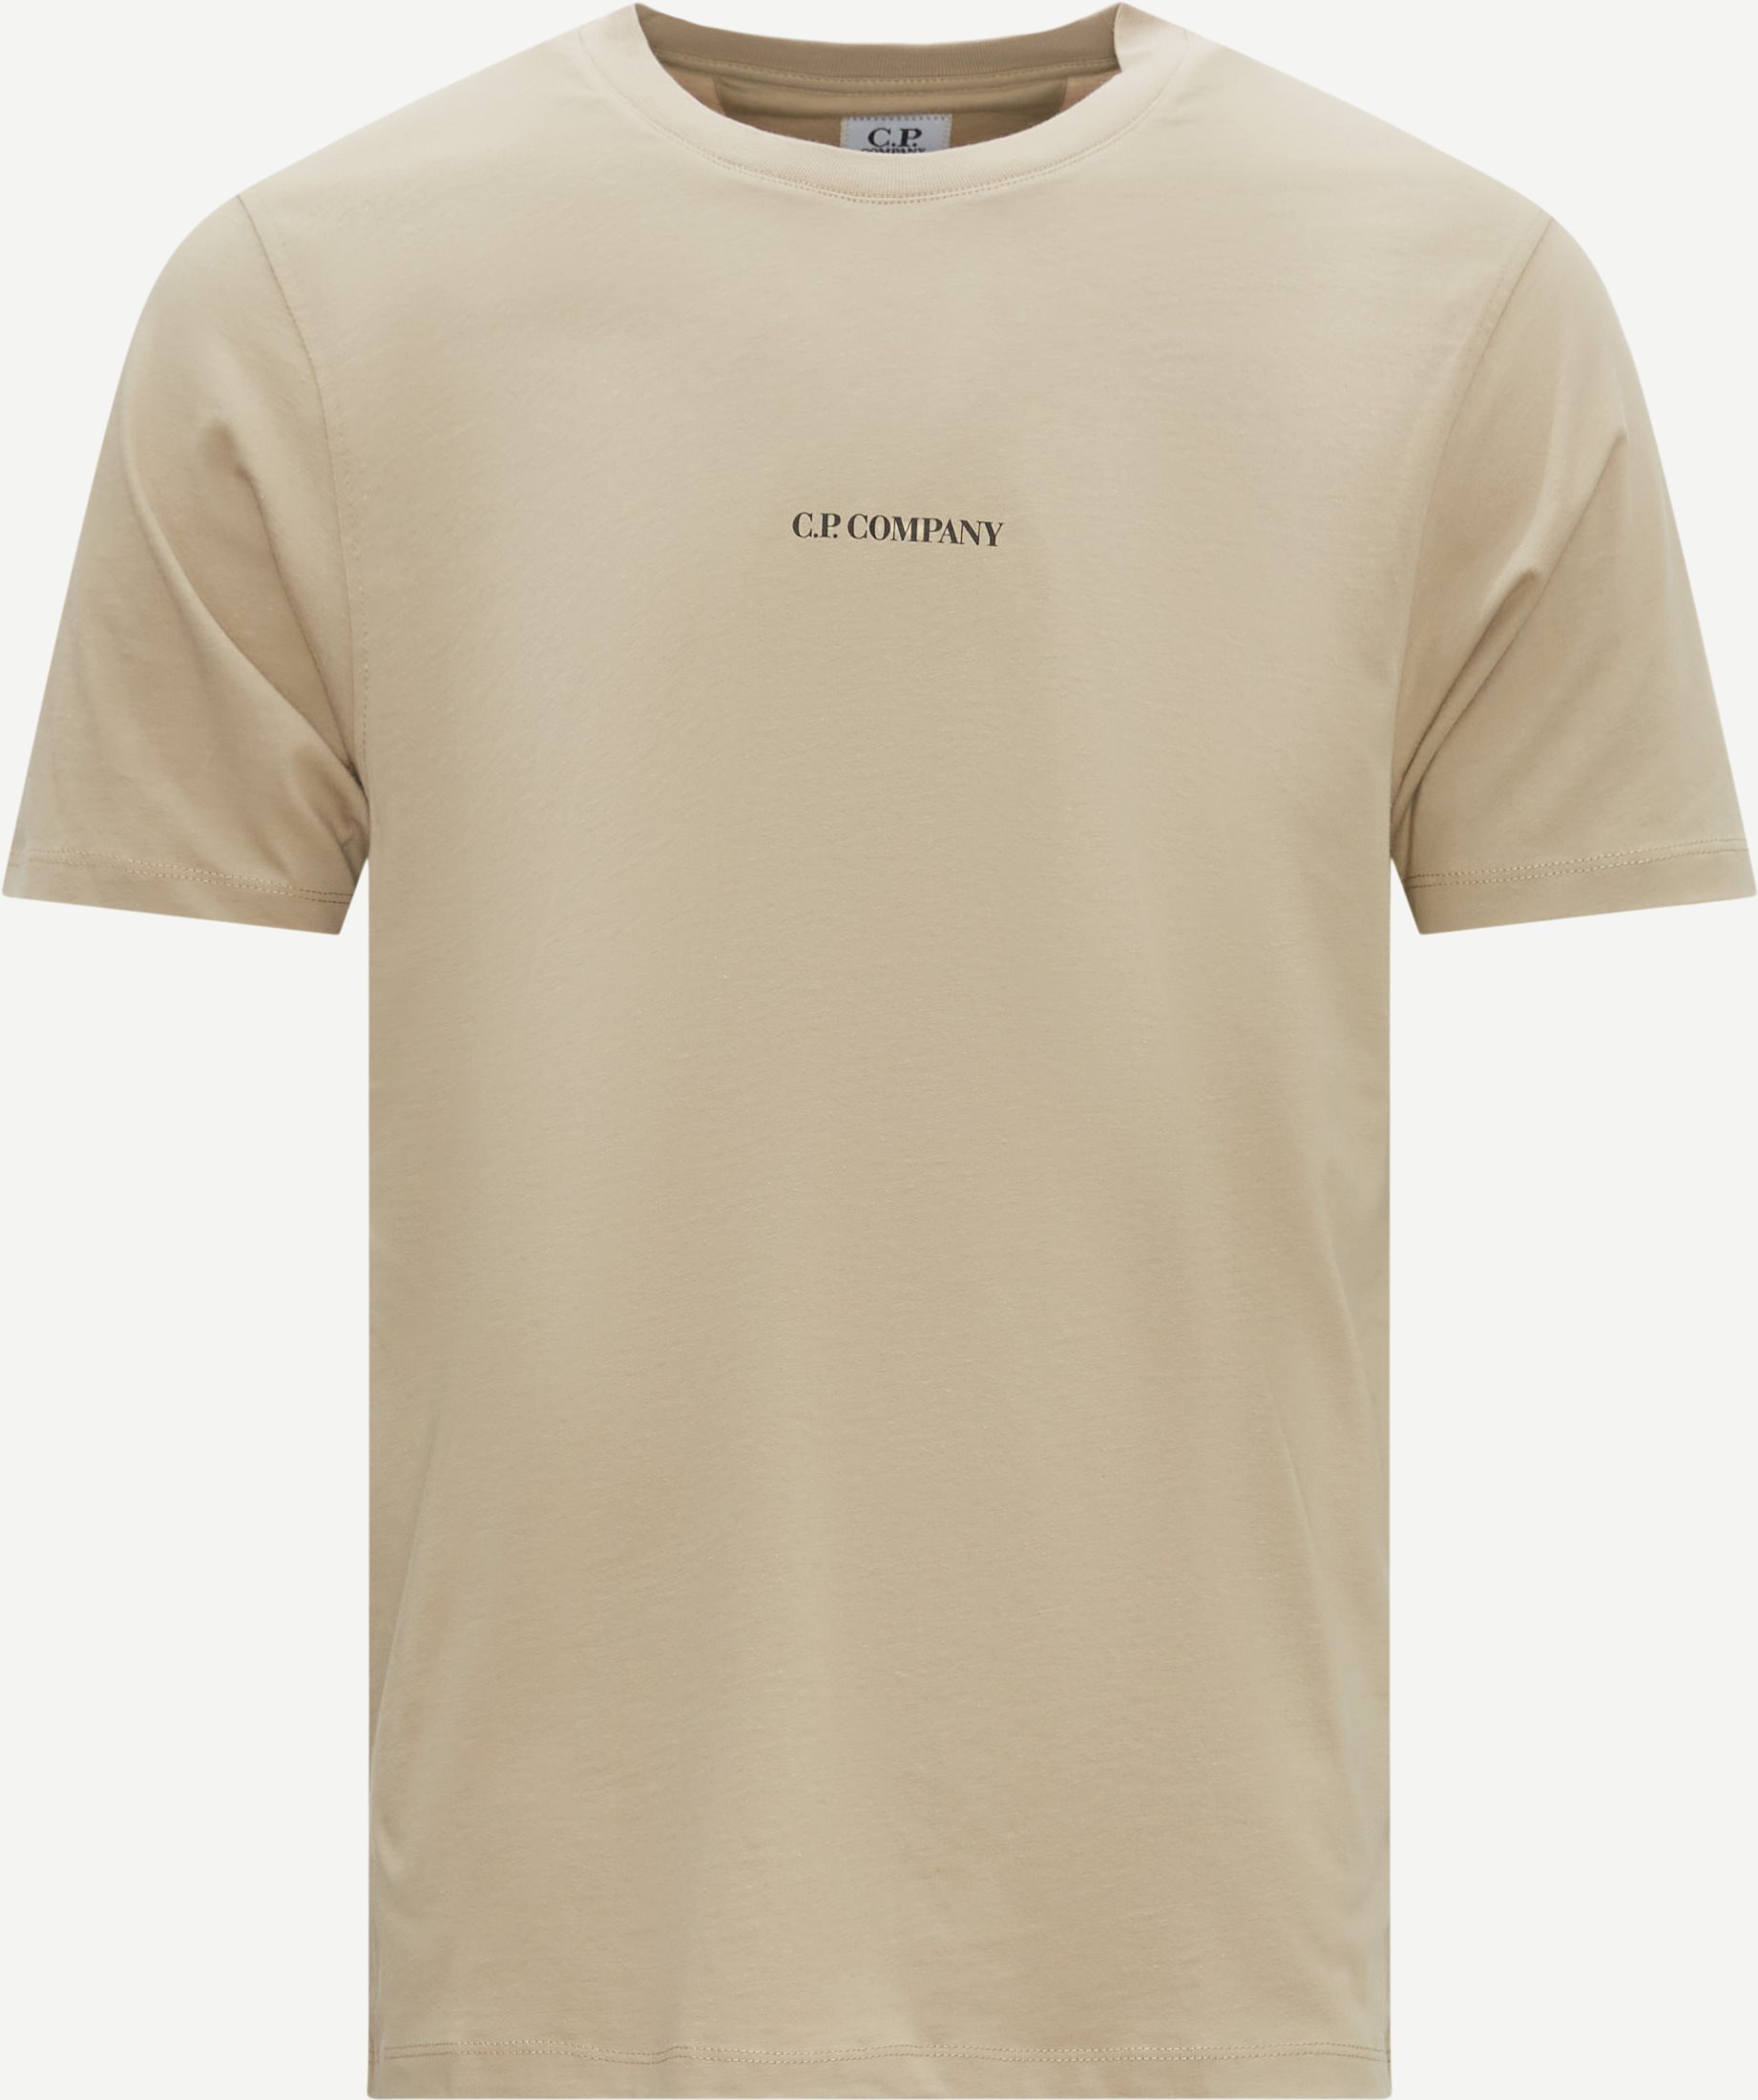 C.P. Company T-shirts TS048A 6011W SS23 Sand